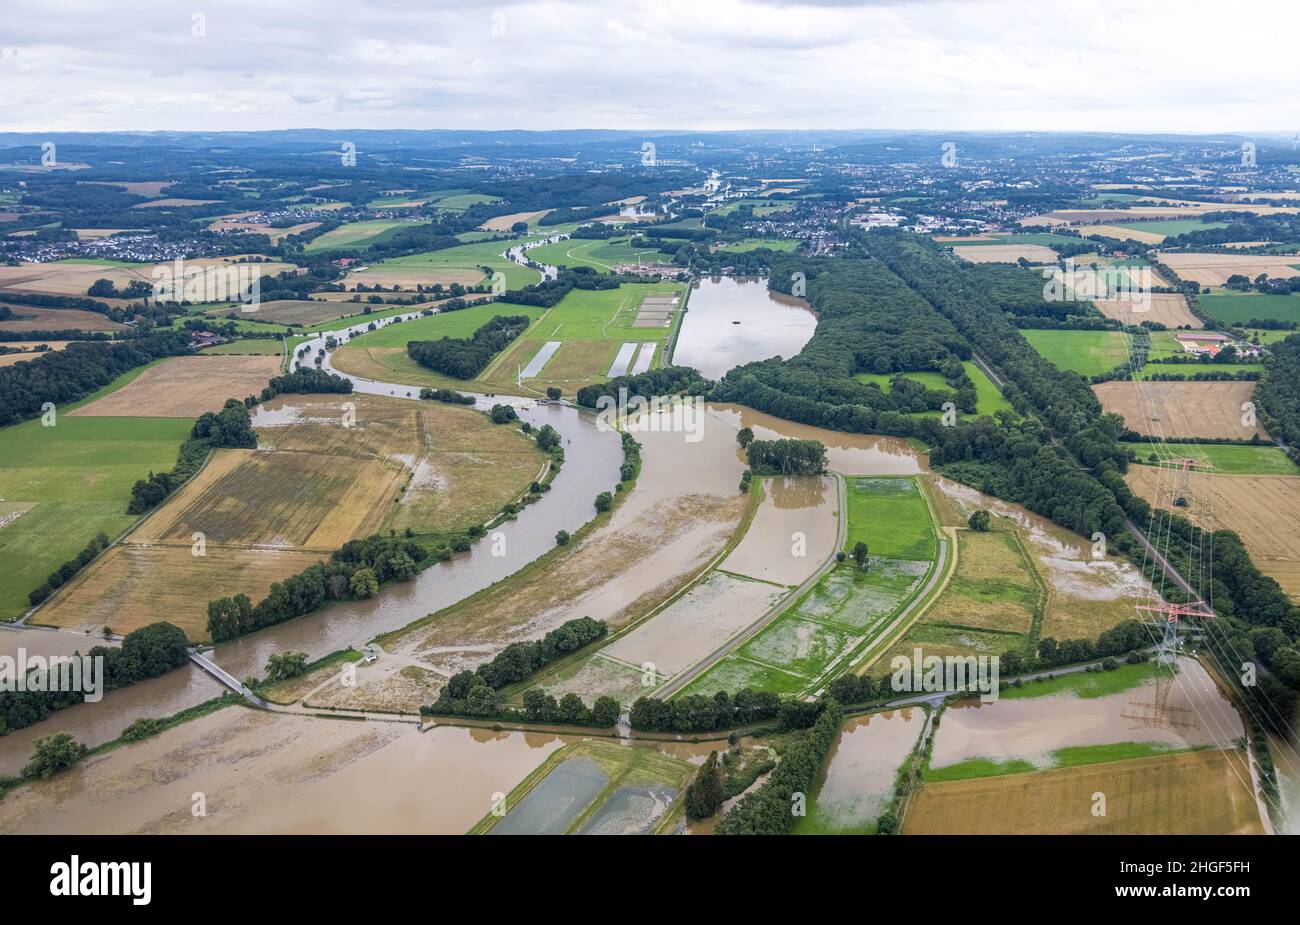 Vista aerea, alluvione della Ruhr, Altendorf, Fröndenberg/Ruhr, area della Ruhr, Renania settentrionale-Vestfalia, Germania, DE, Europa, vista degli uccelli, fotografia aerea, aeri Foto Stock